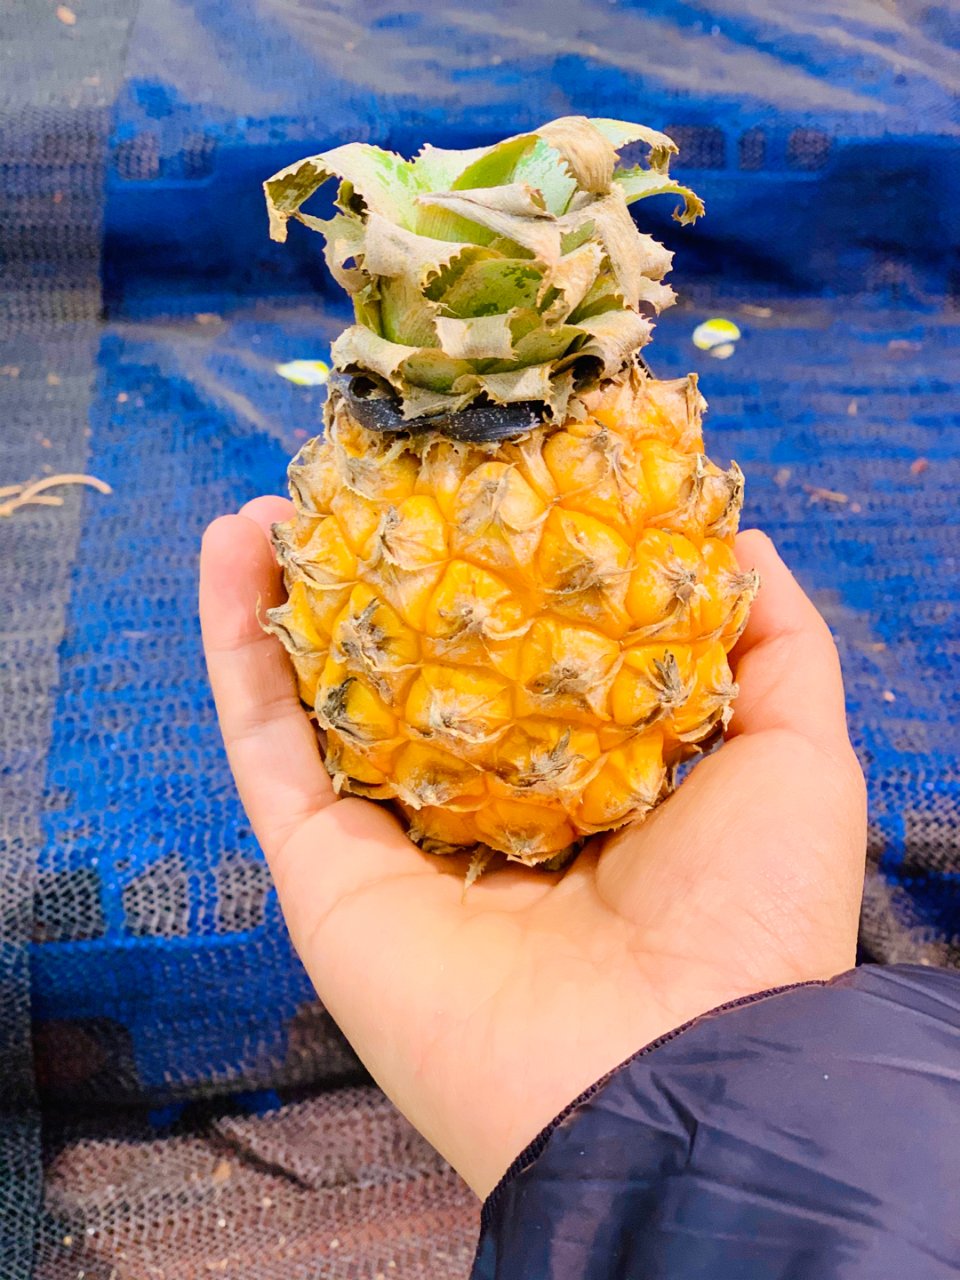 这么小的菠萝你见过么？...